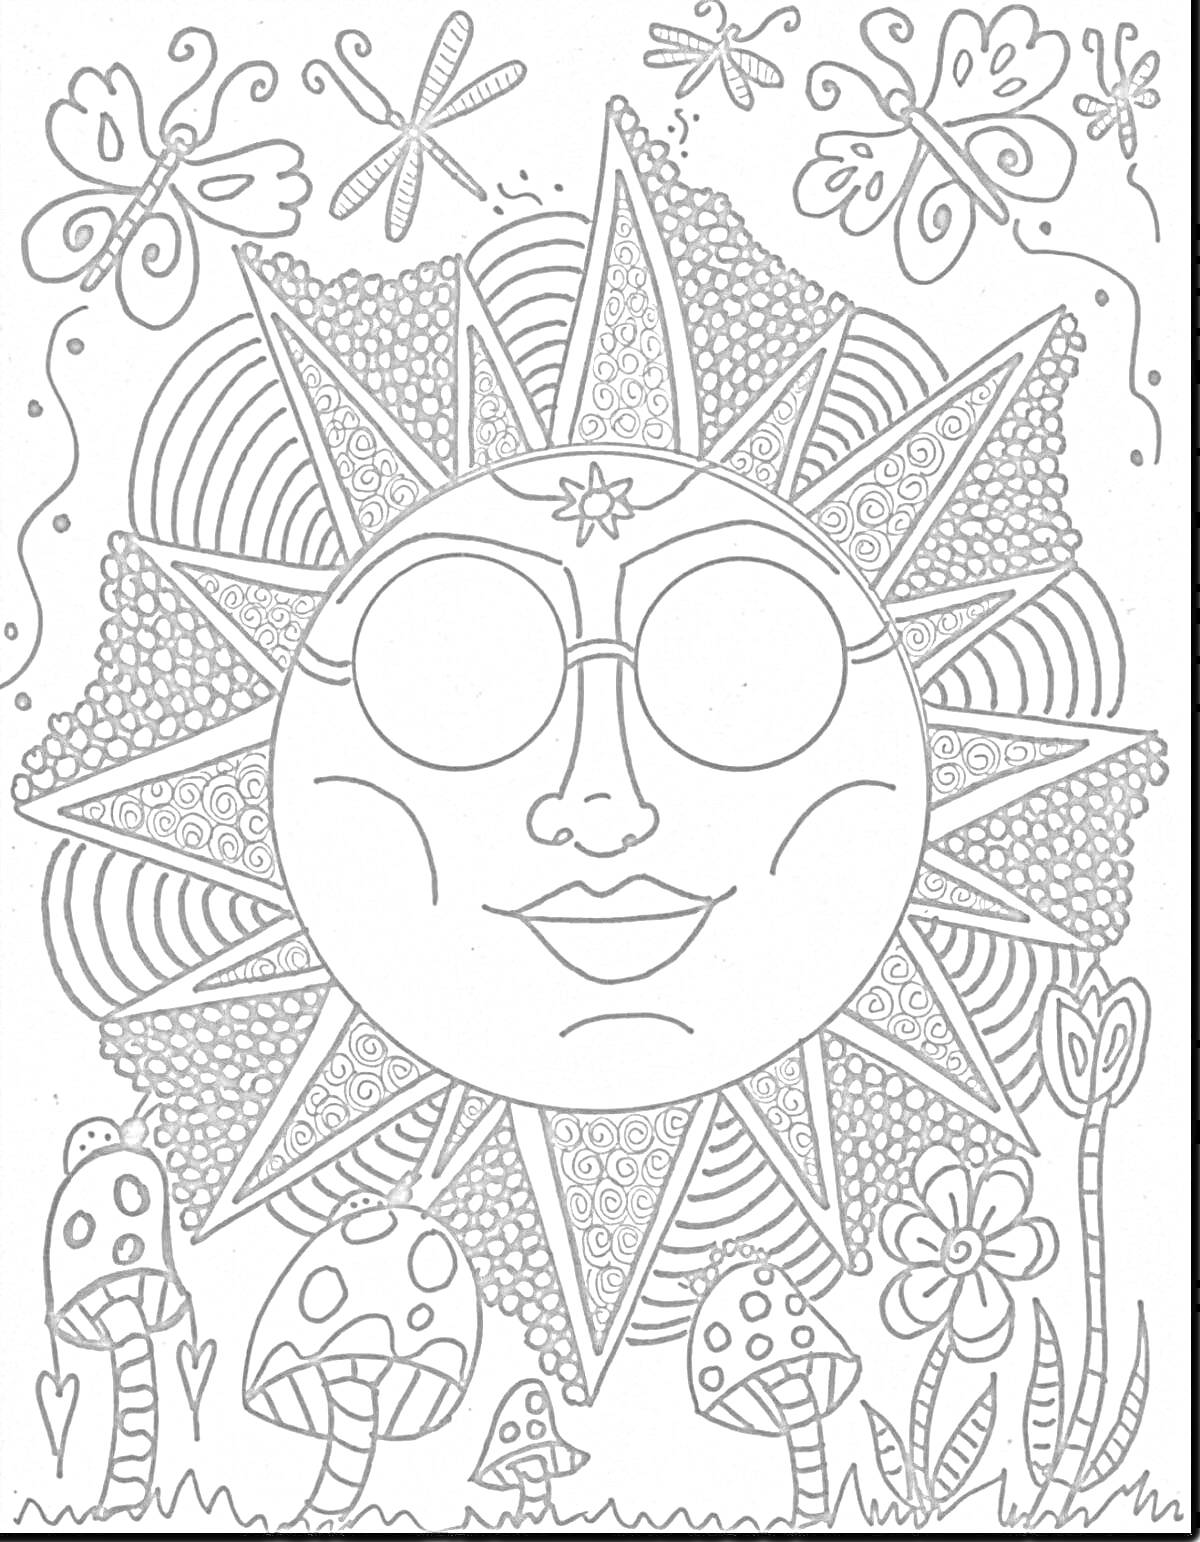 Раскраска Солнечное лицо с очками в окружении бабочек, стрекоз, цветов и грибов